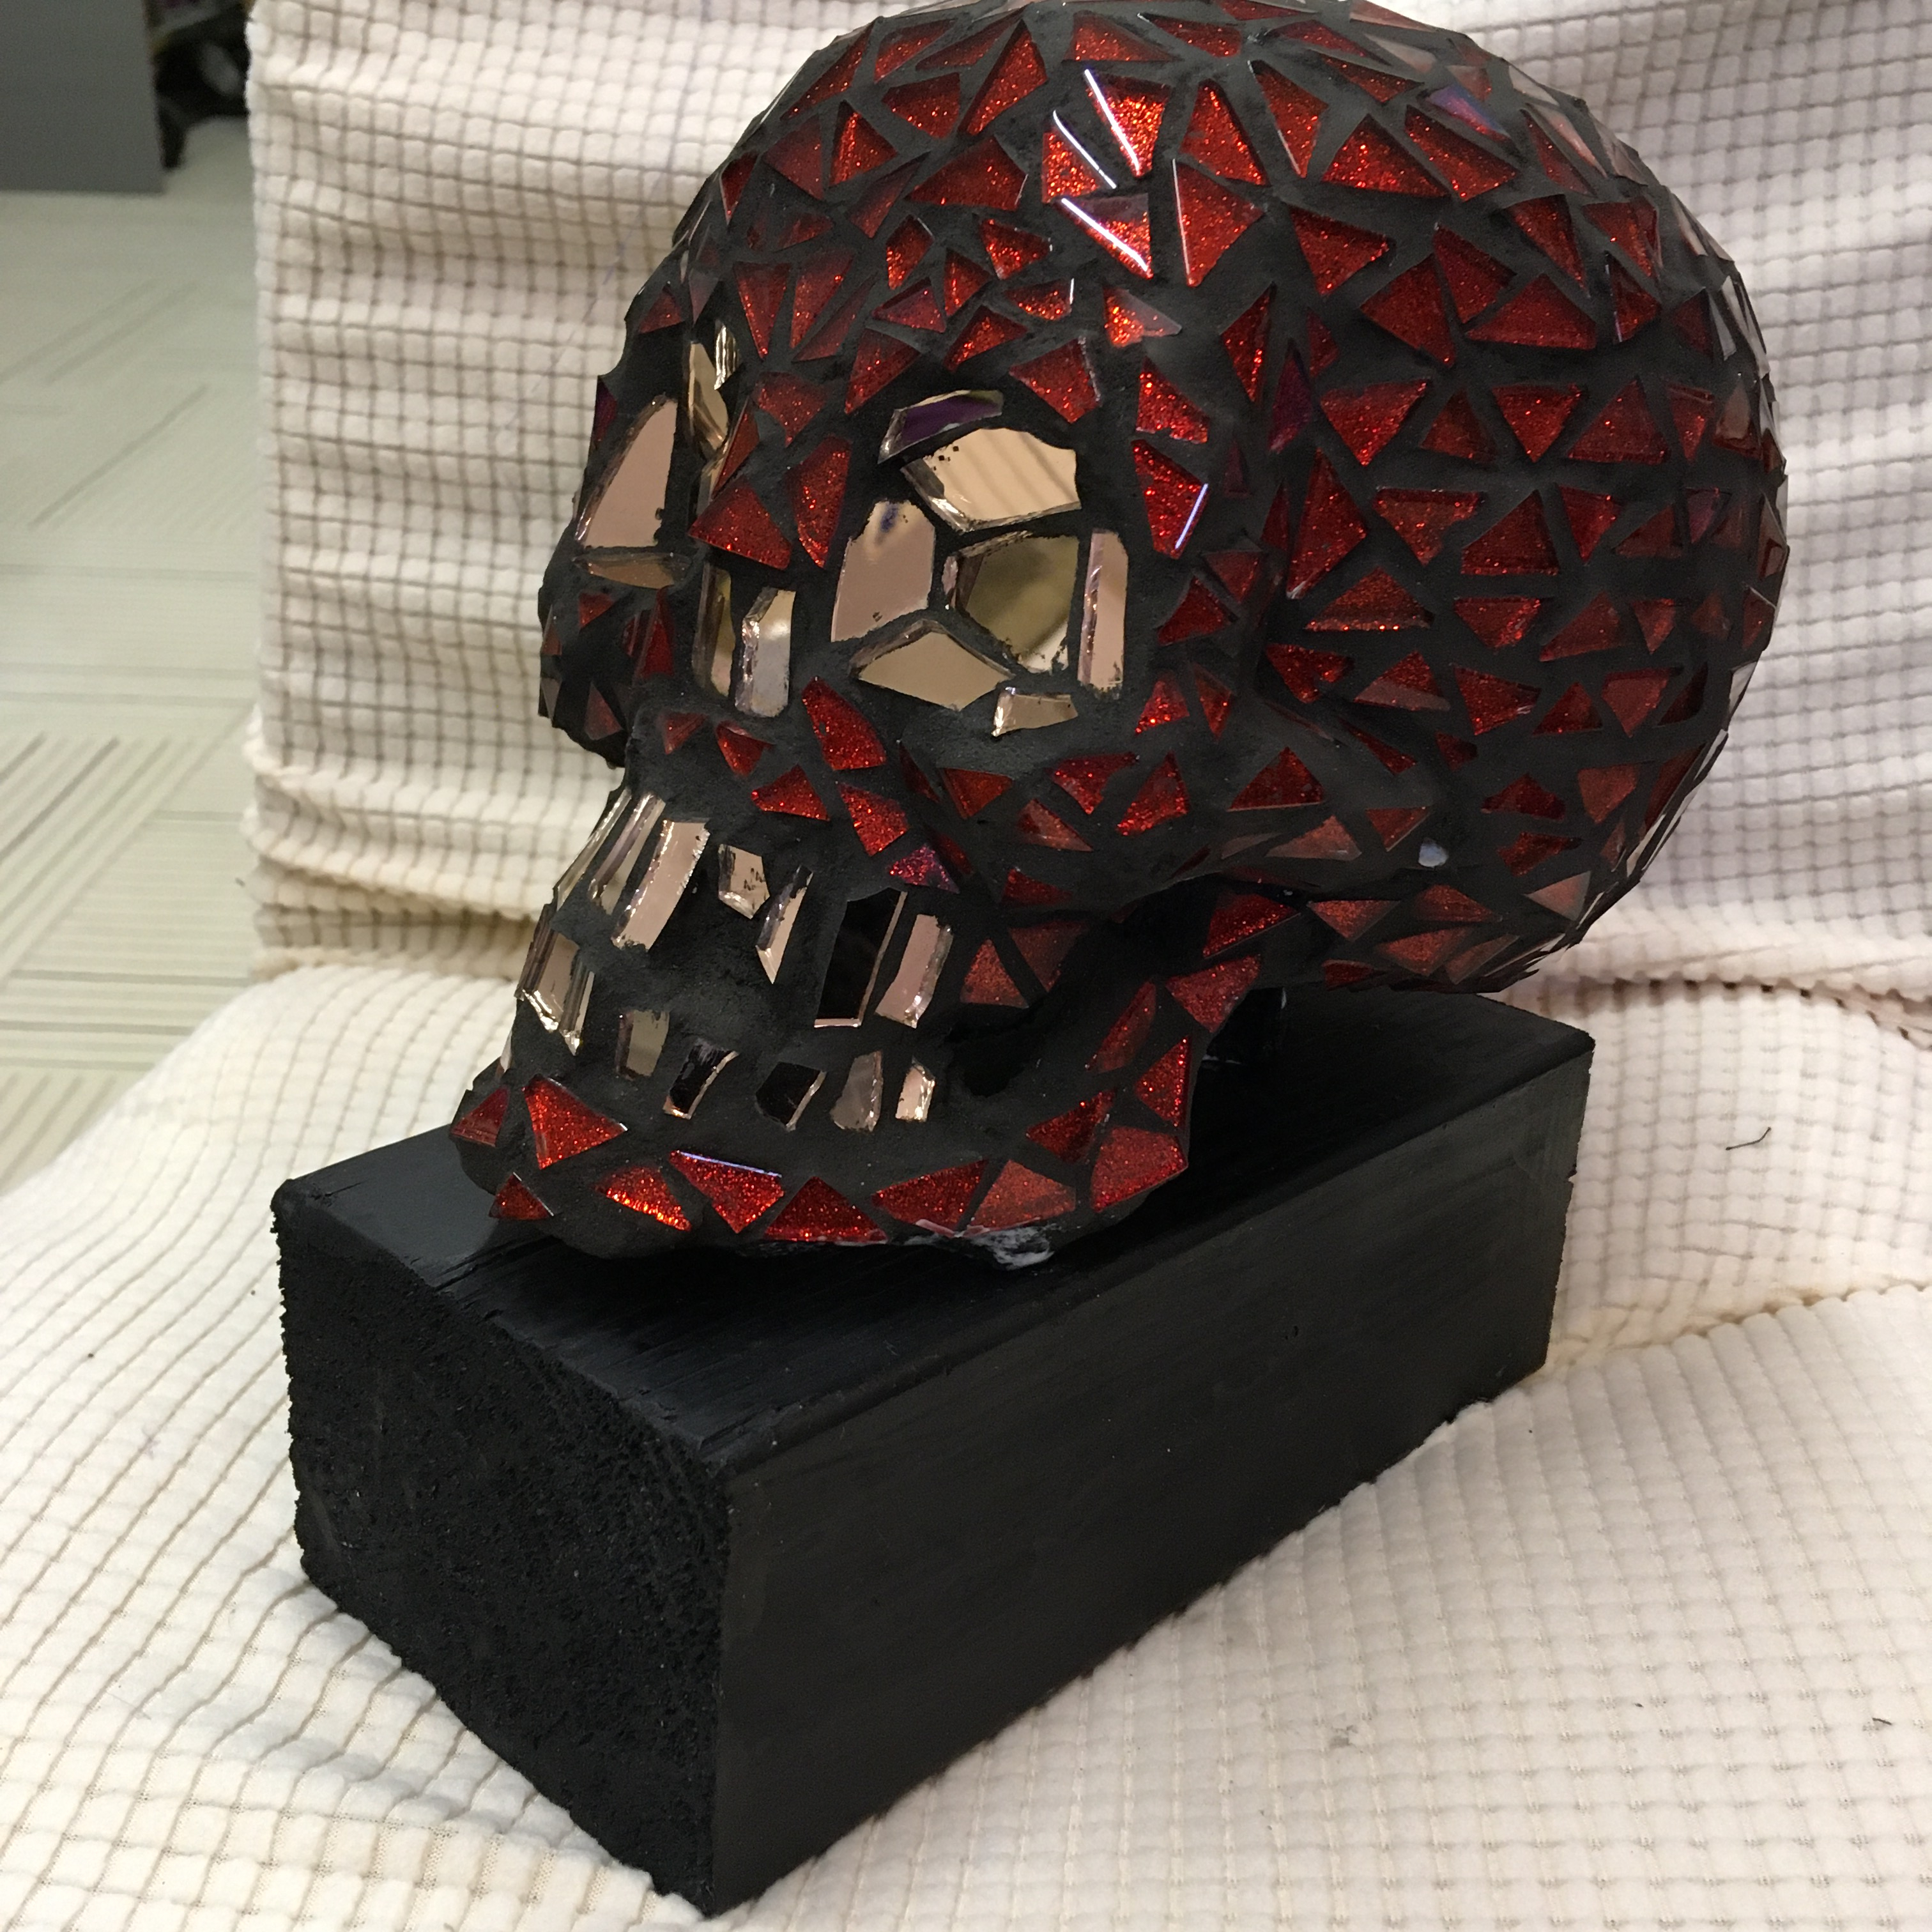 Skull rood01b